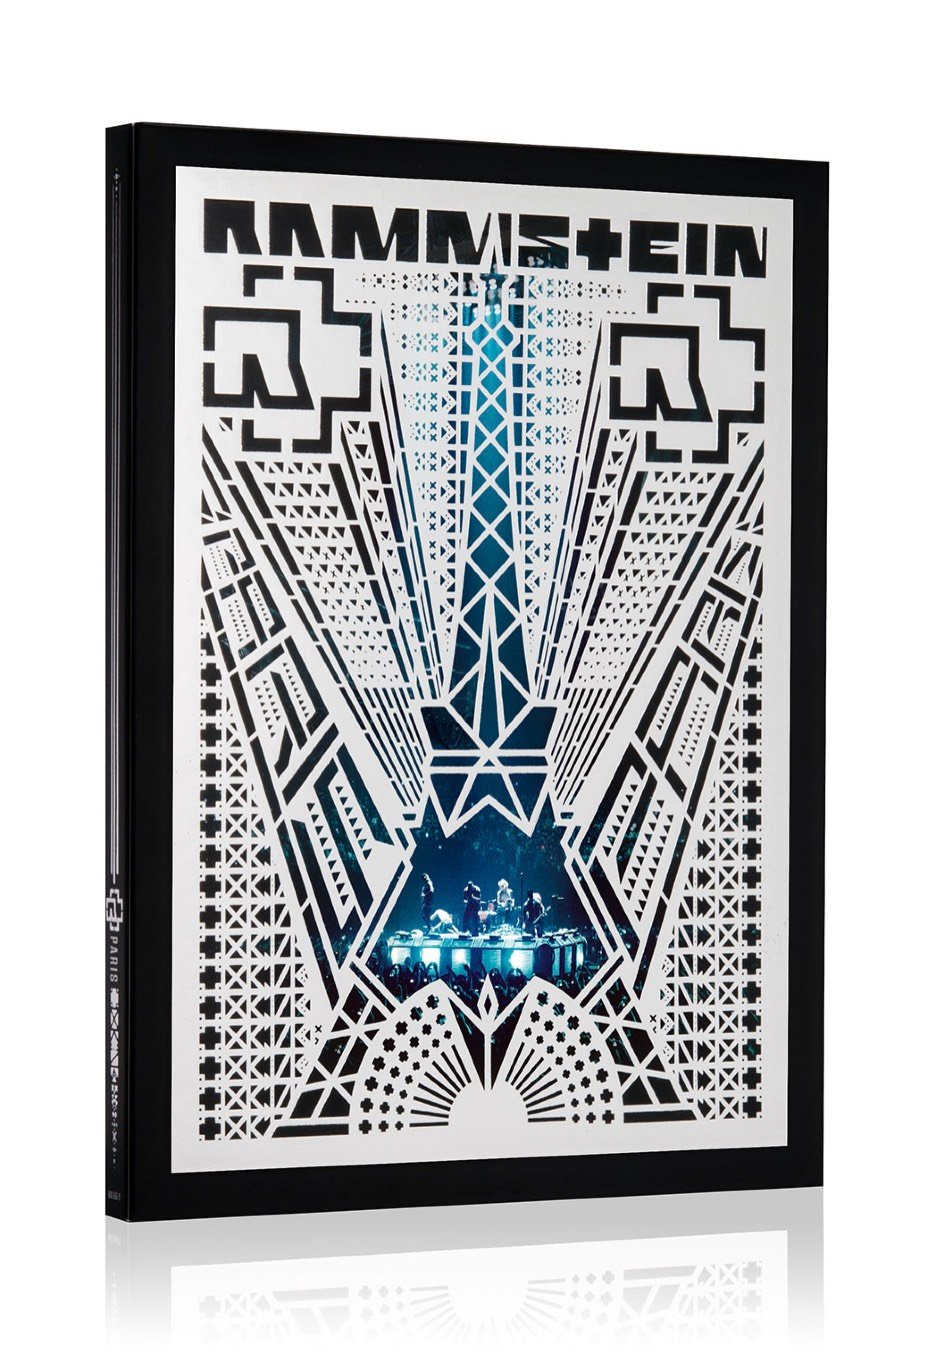 Rammstein - Rammstein: Paris (Special Edt.) - 2 CD + Blu Ray